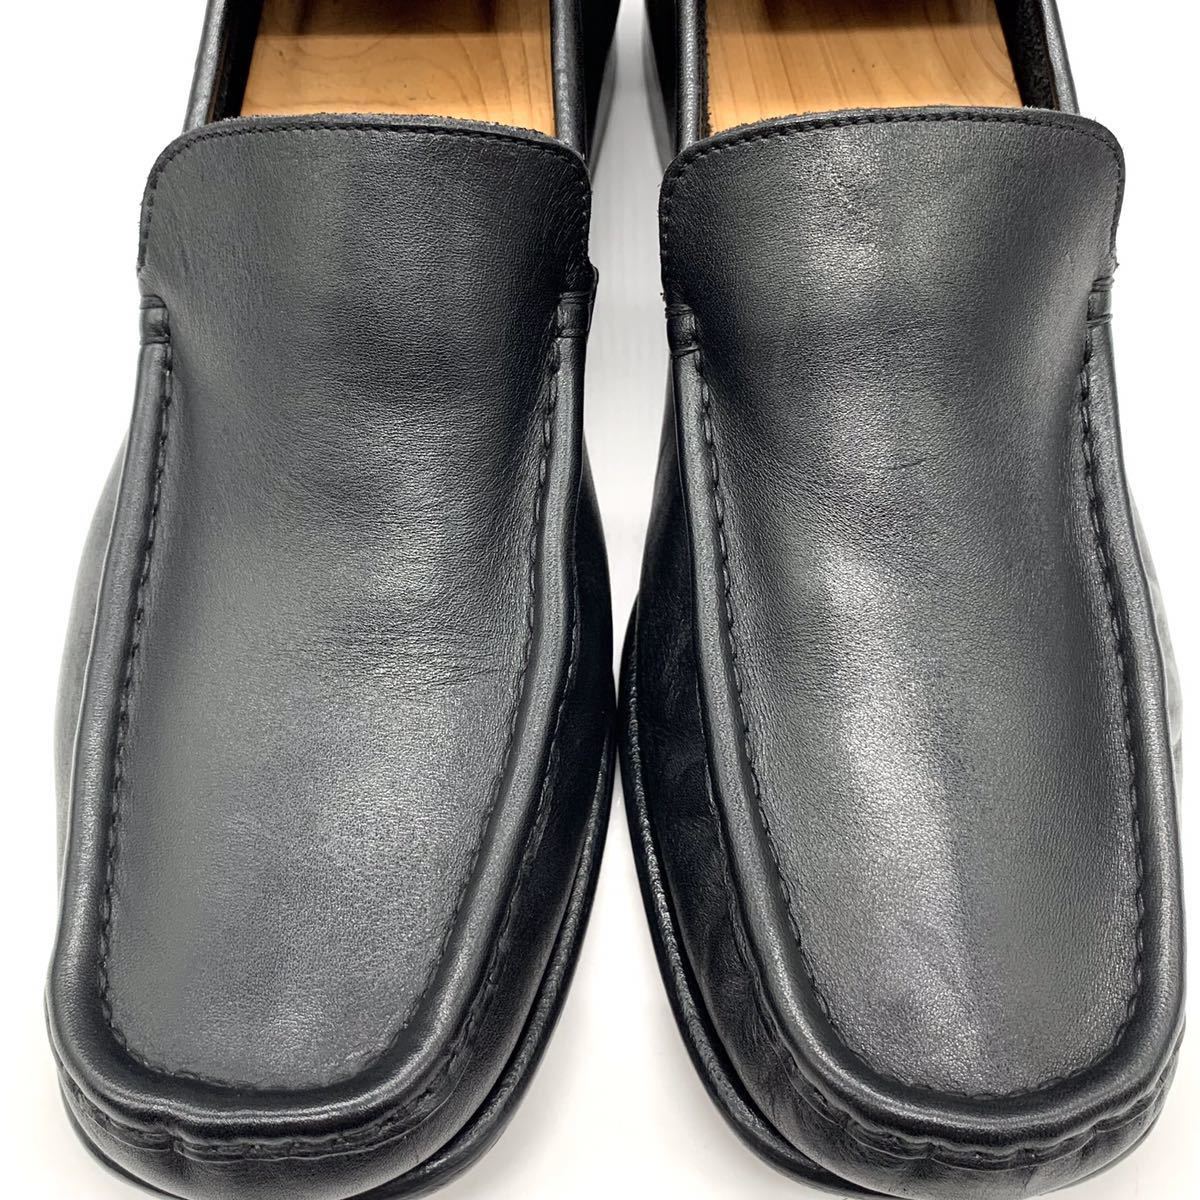 Paul Smith (ポールスミス) ローファー スリッポン モカシンシューズ ビジネス レザー ブラック 黒 UK7 41 25.5cm 革靴  メンズ